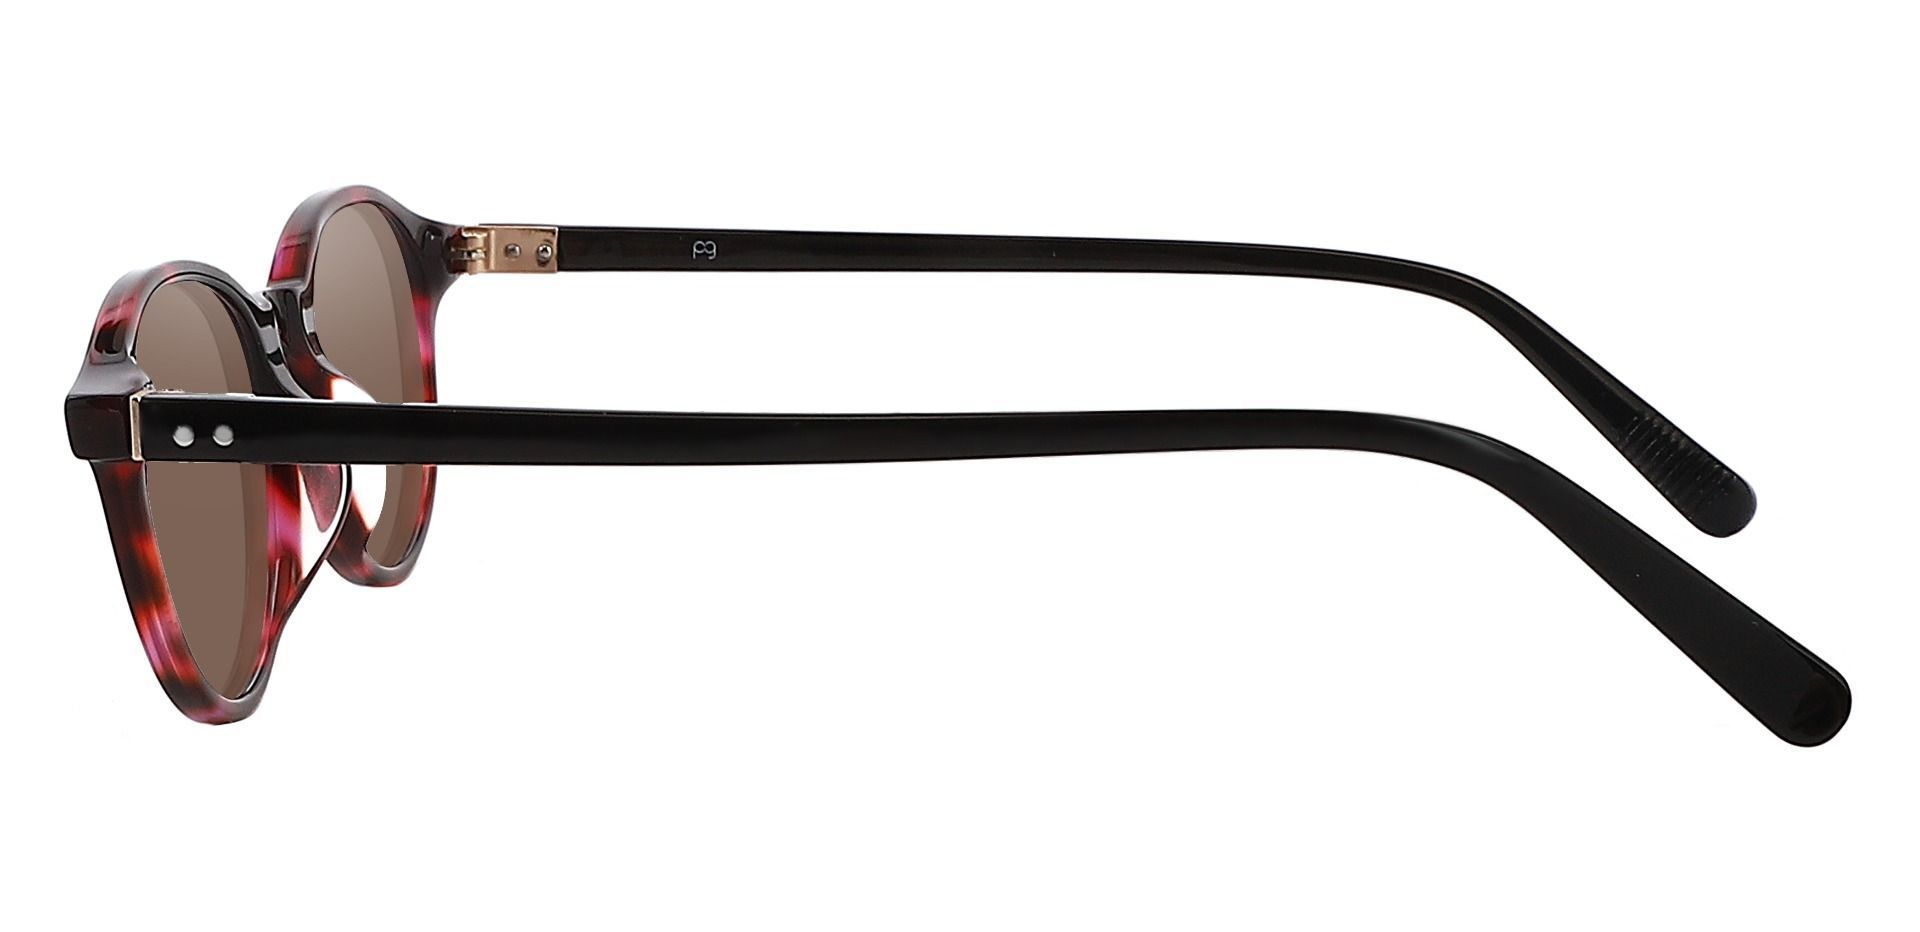 Avon Oval Reading Sunglasses - Tortoise Frame With Brown Lenses